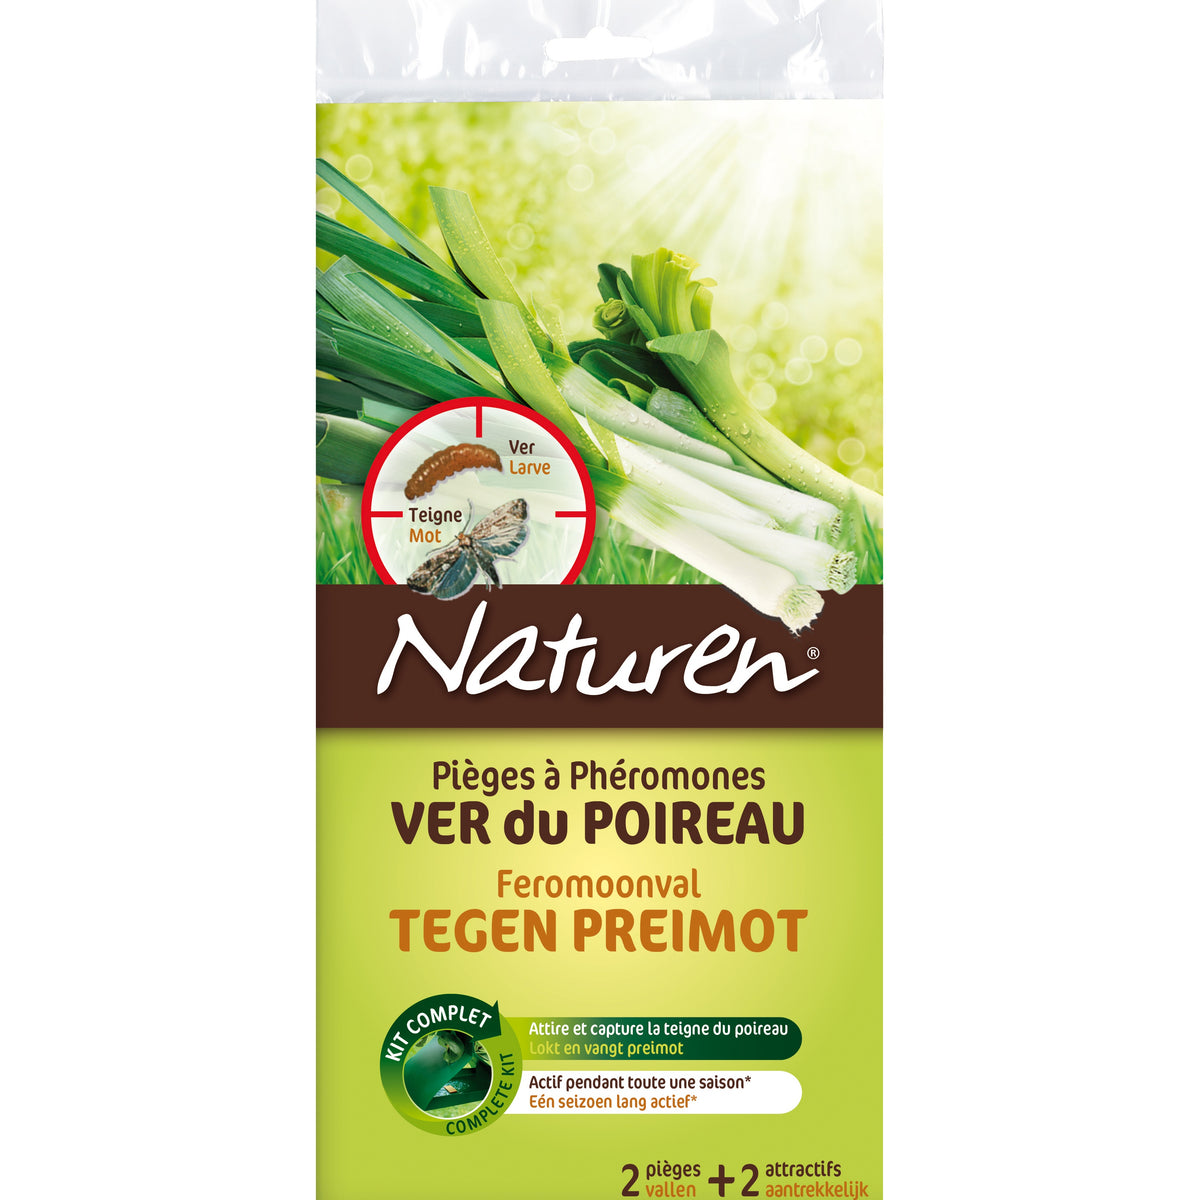 2 Pièges à phéromones - Ver du poireau NATUREN - Plantes